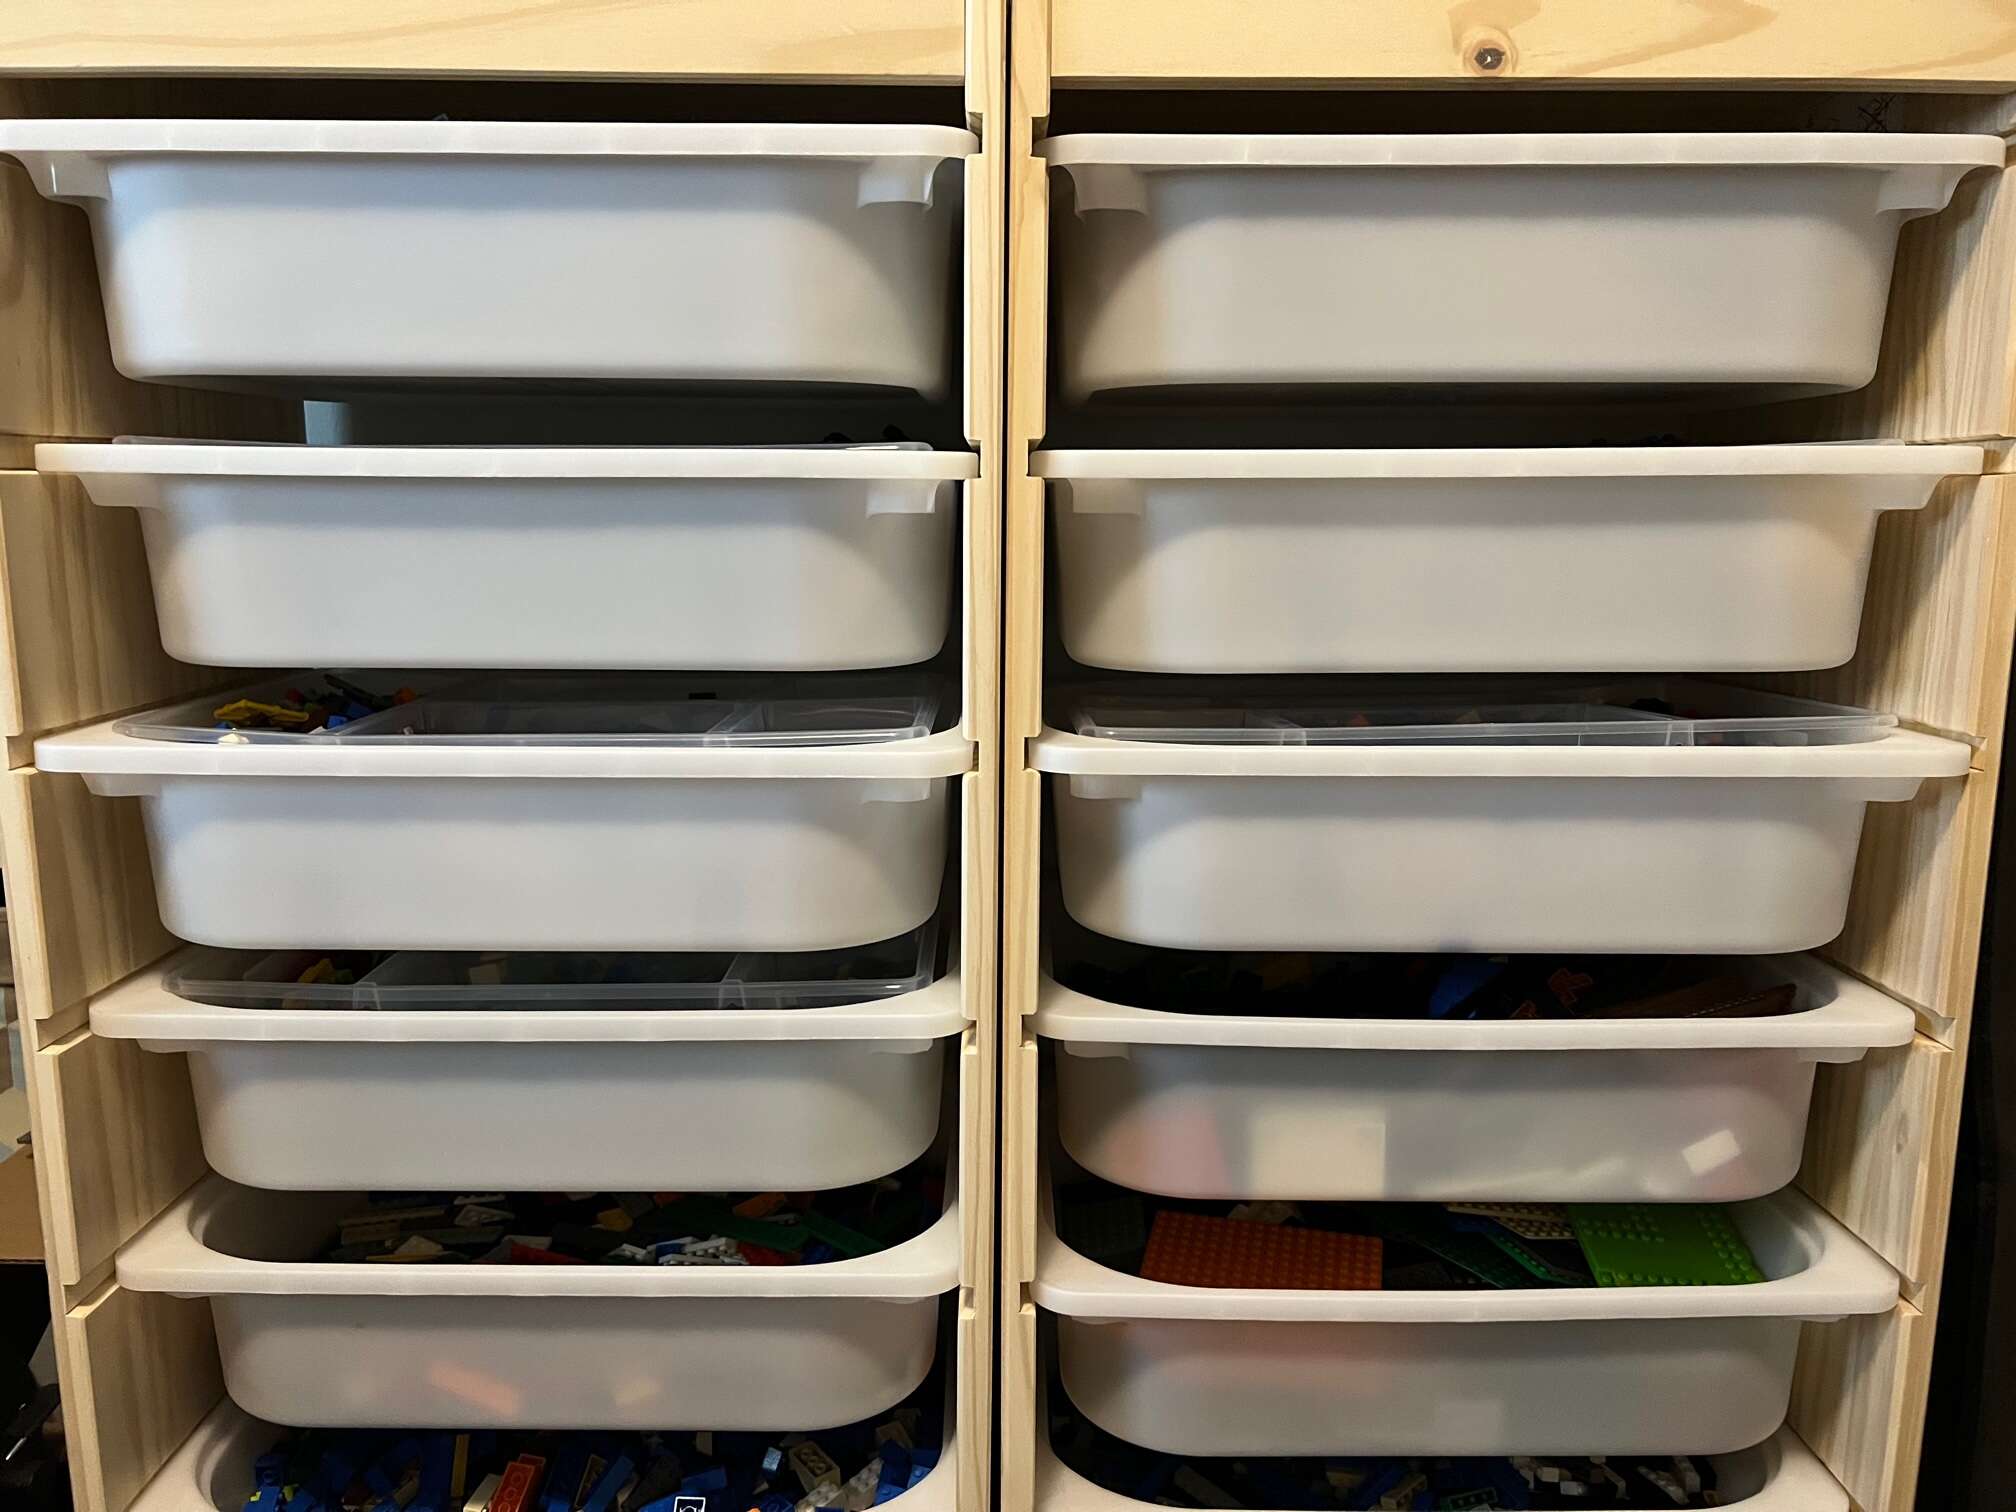 The best way to organize Lego using Ikea Trofast bins